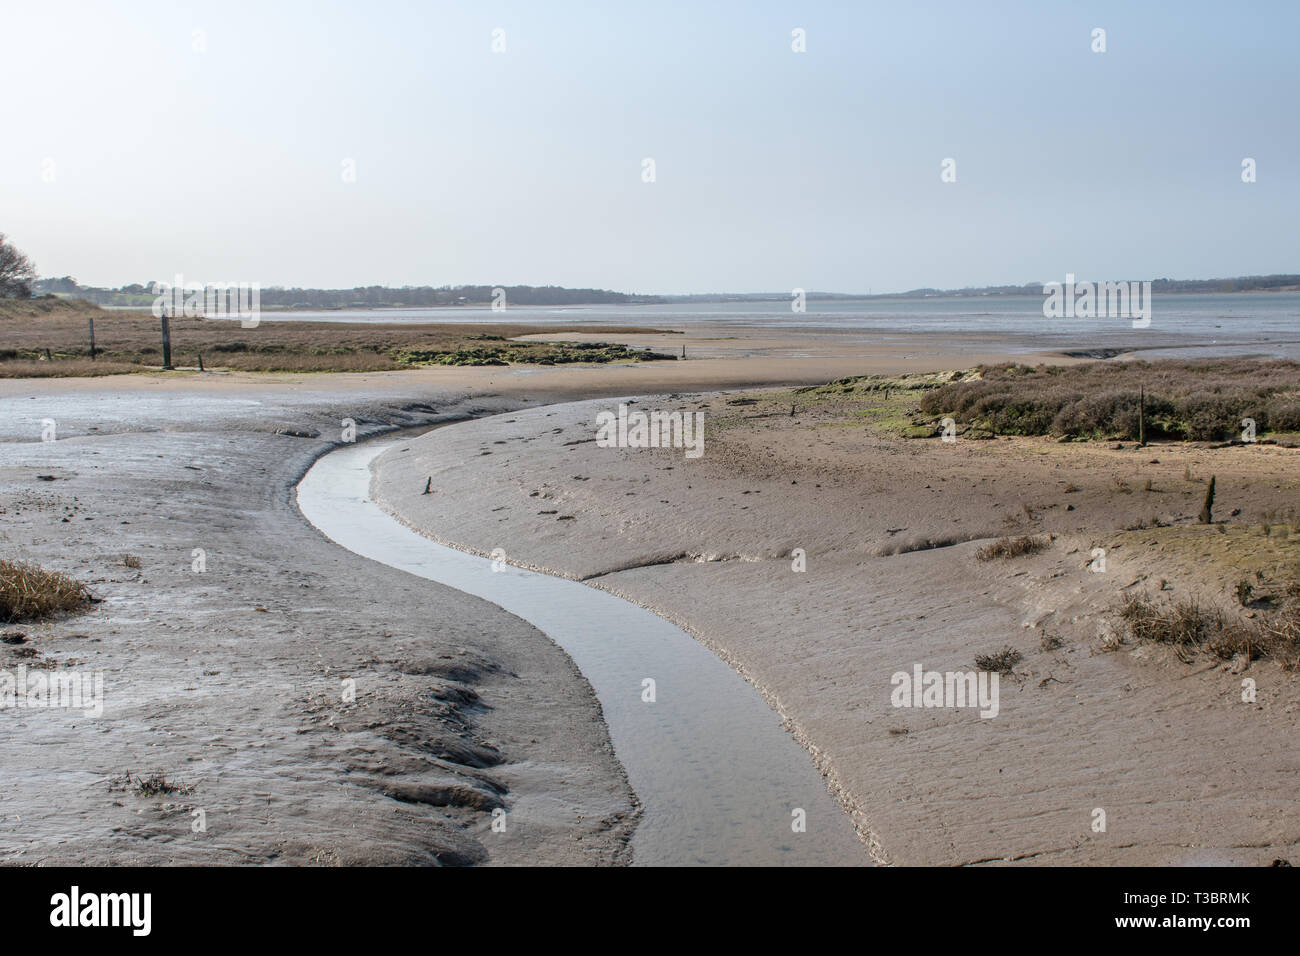 Flusso di avvolgimento voce a mare nel fangoso estuario del regno unito a bassa marea Foto Stock